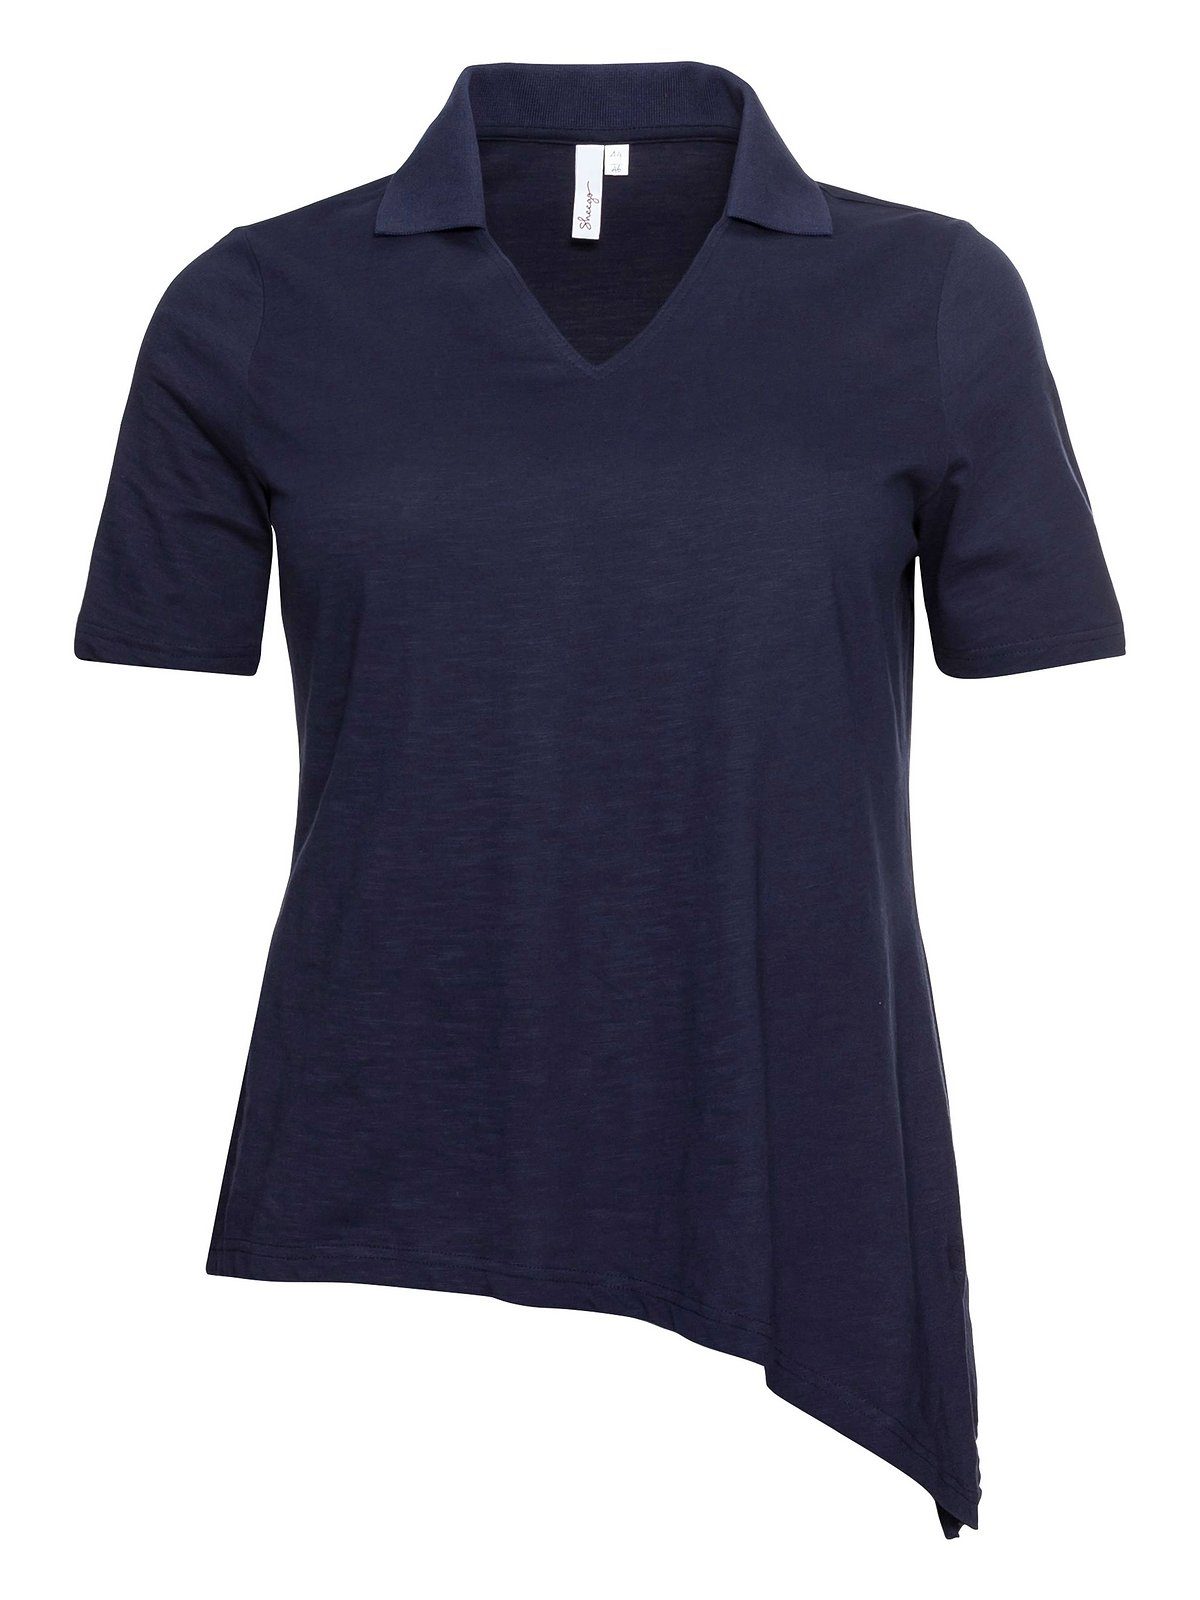 Sheego T-Shirt und Saum marine mit Polokragen Größen asymmetrischem Große